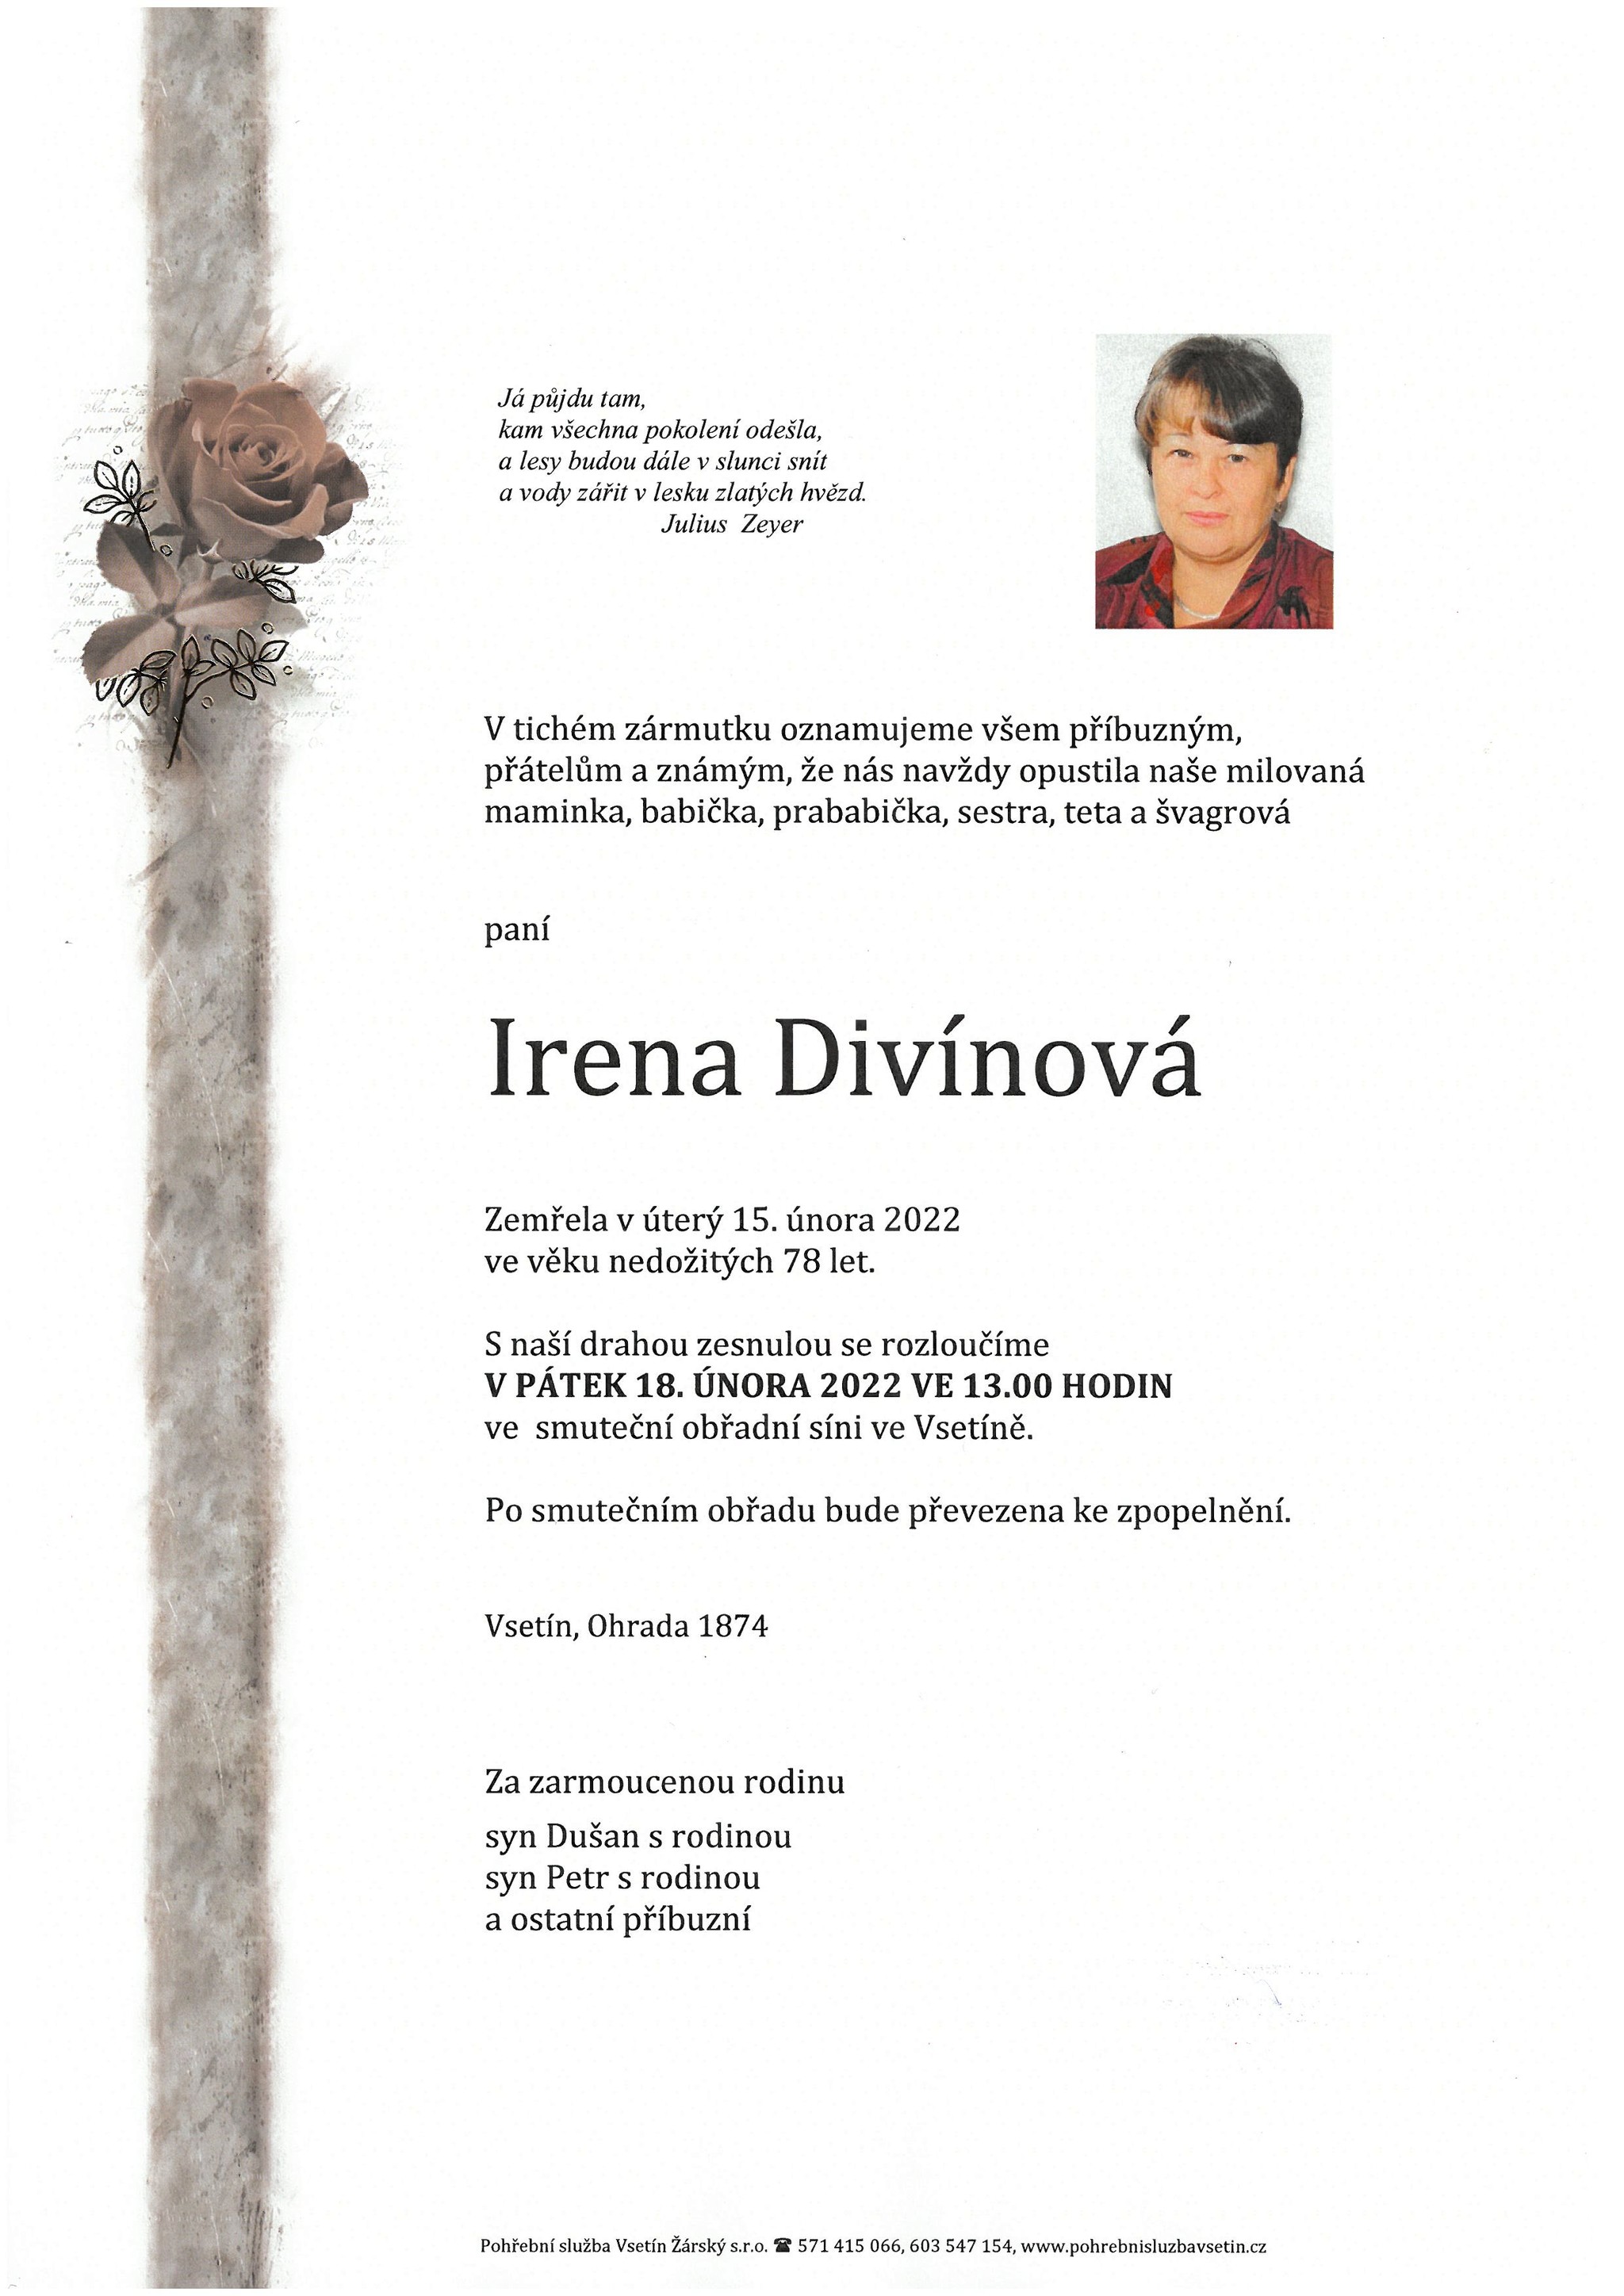 Irena Divínová